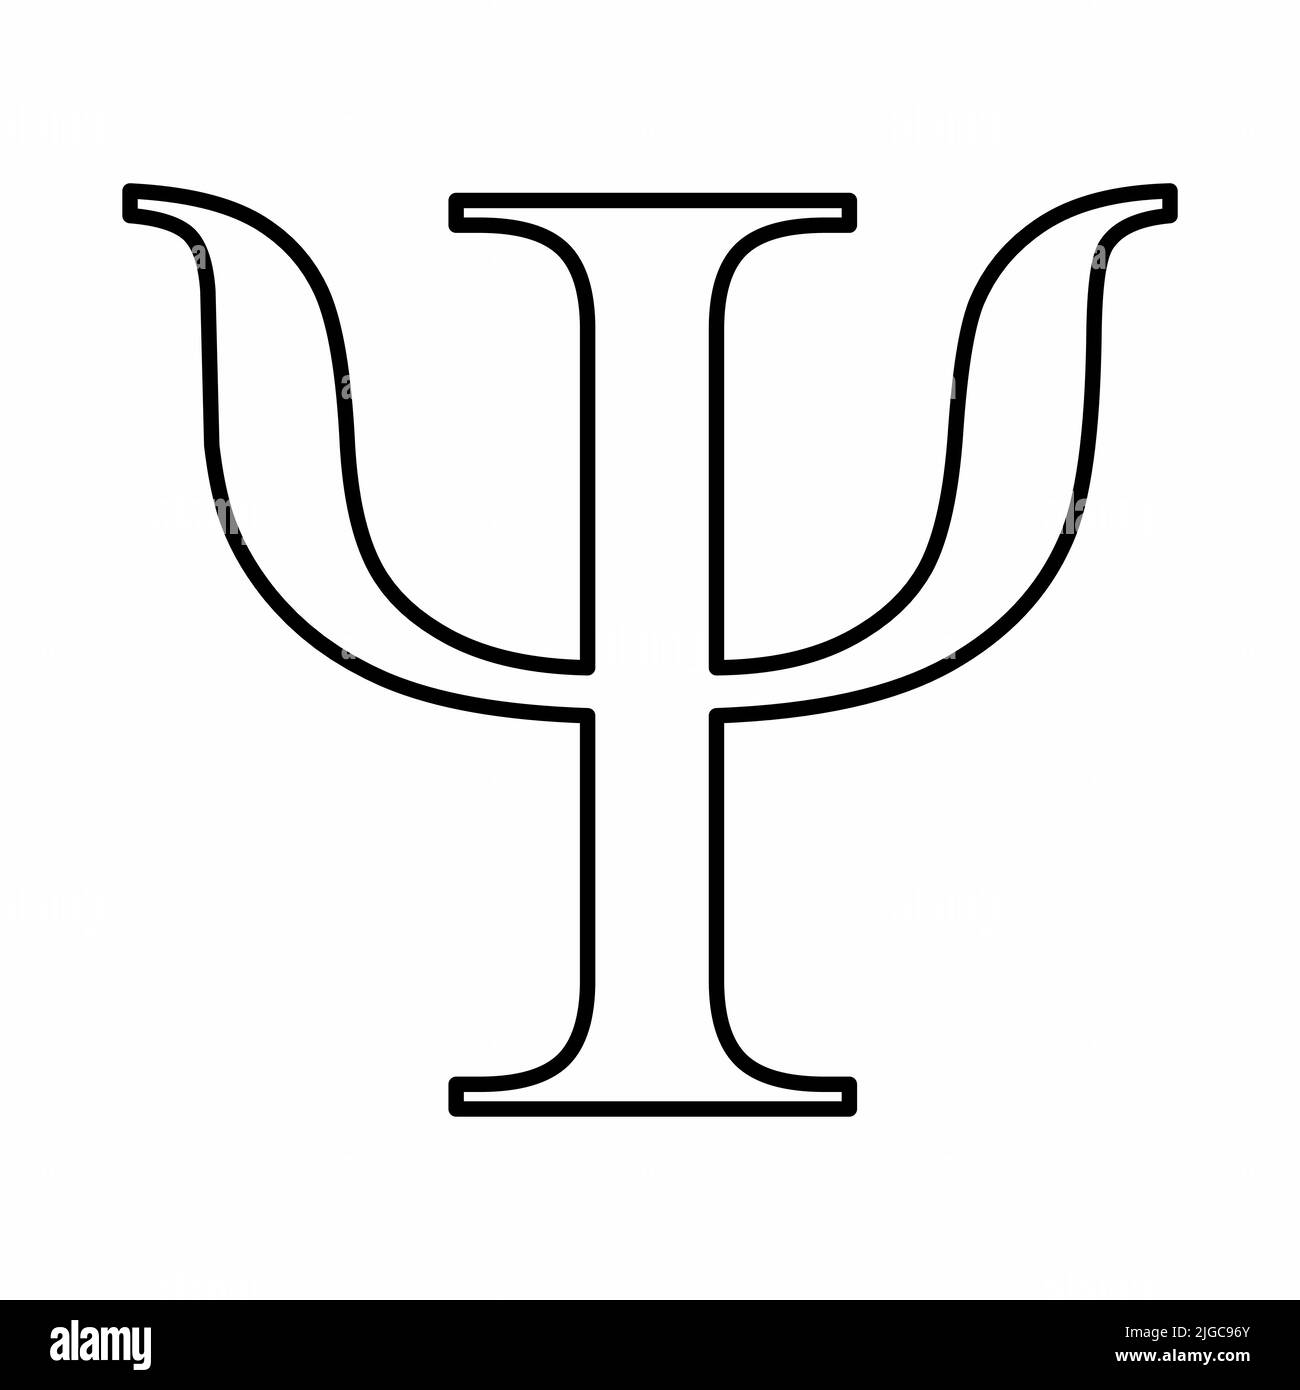 Psi segno greco. Contorni neri su sfondo bianco. Illustrazione Vettoriale